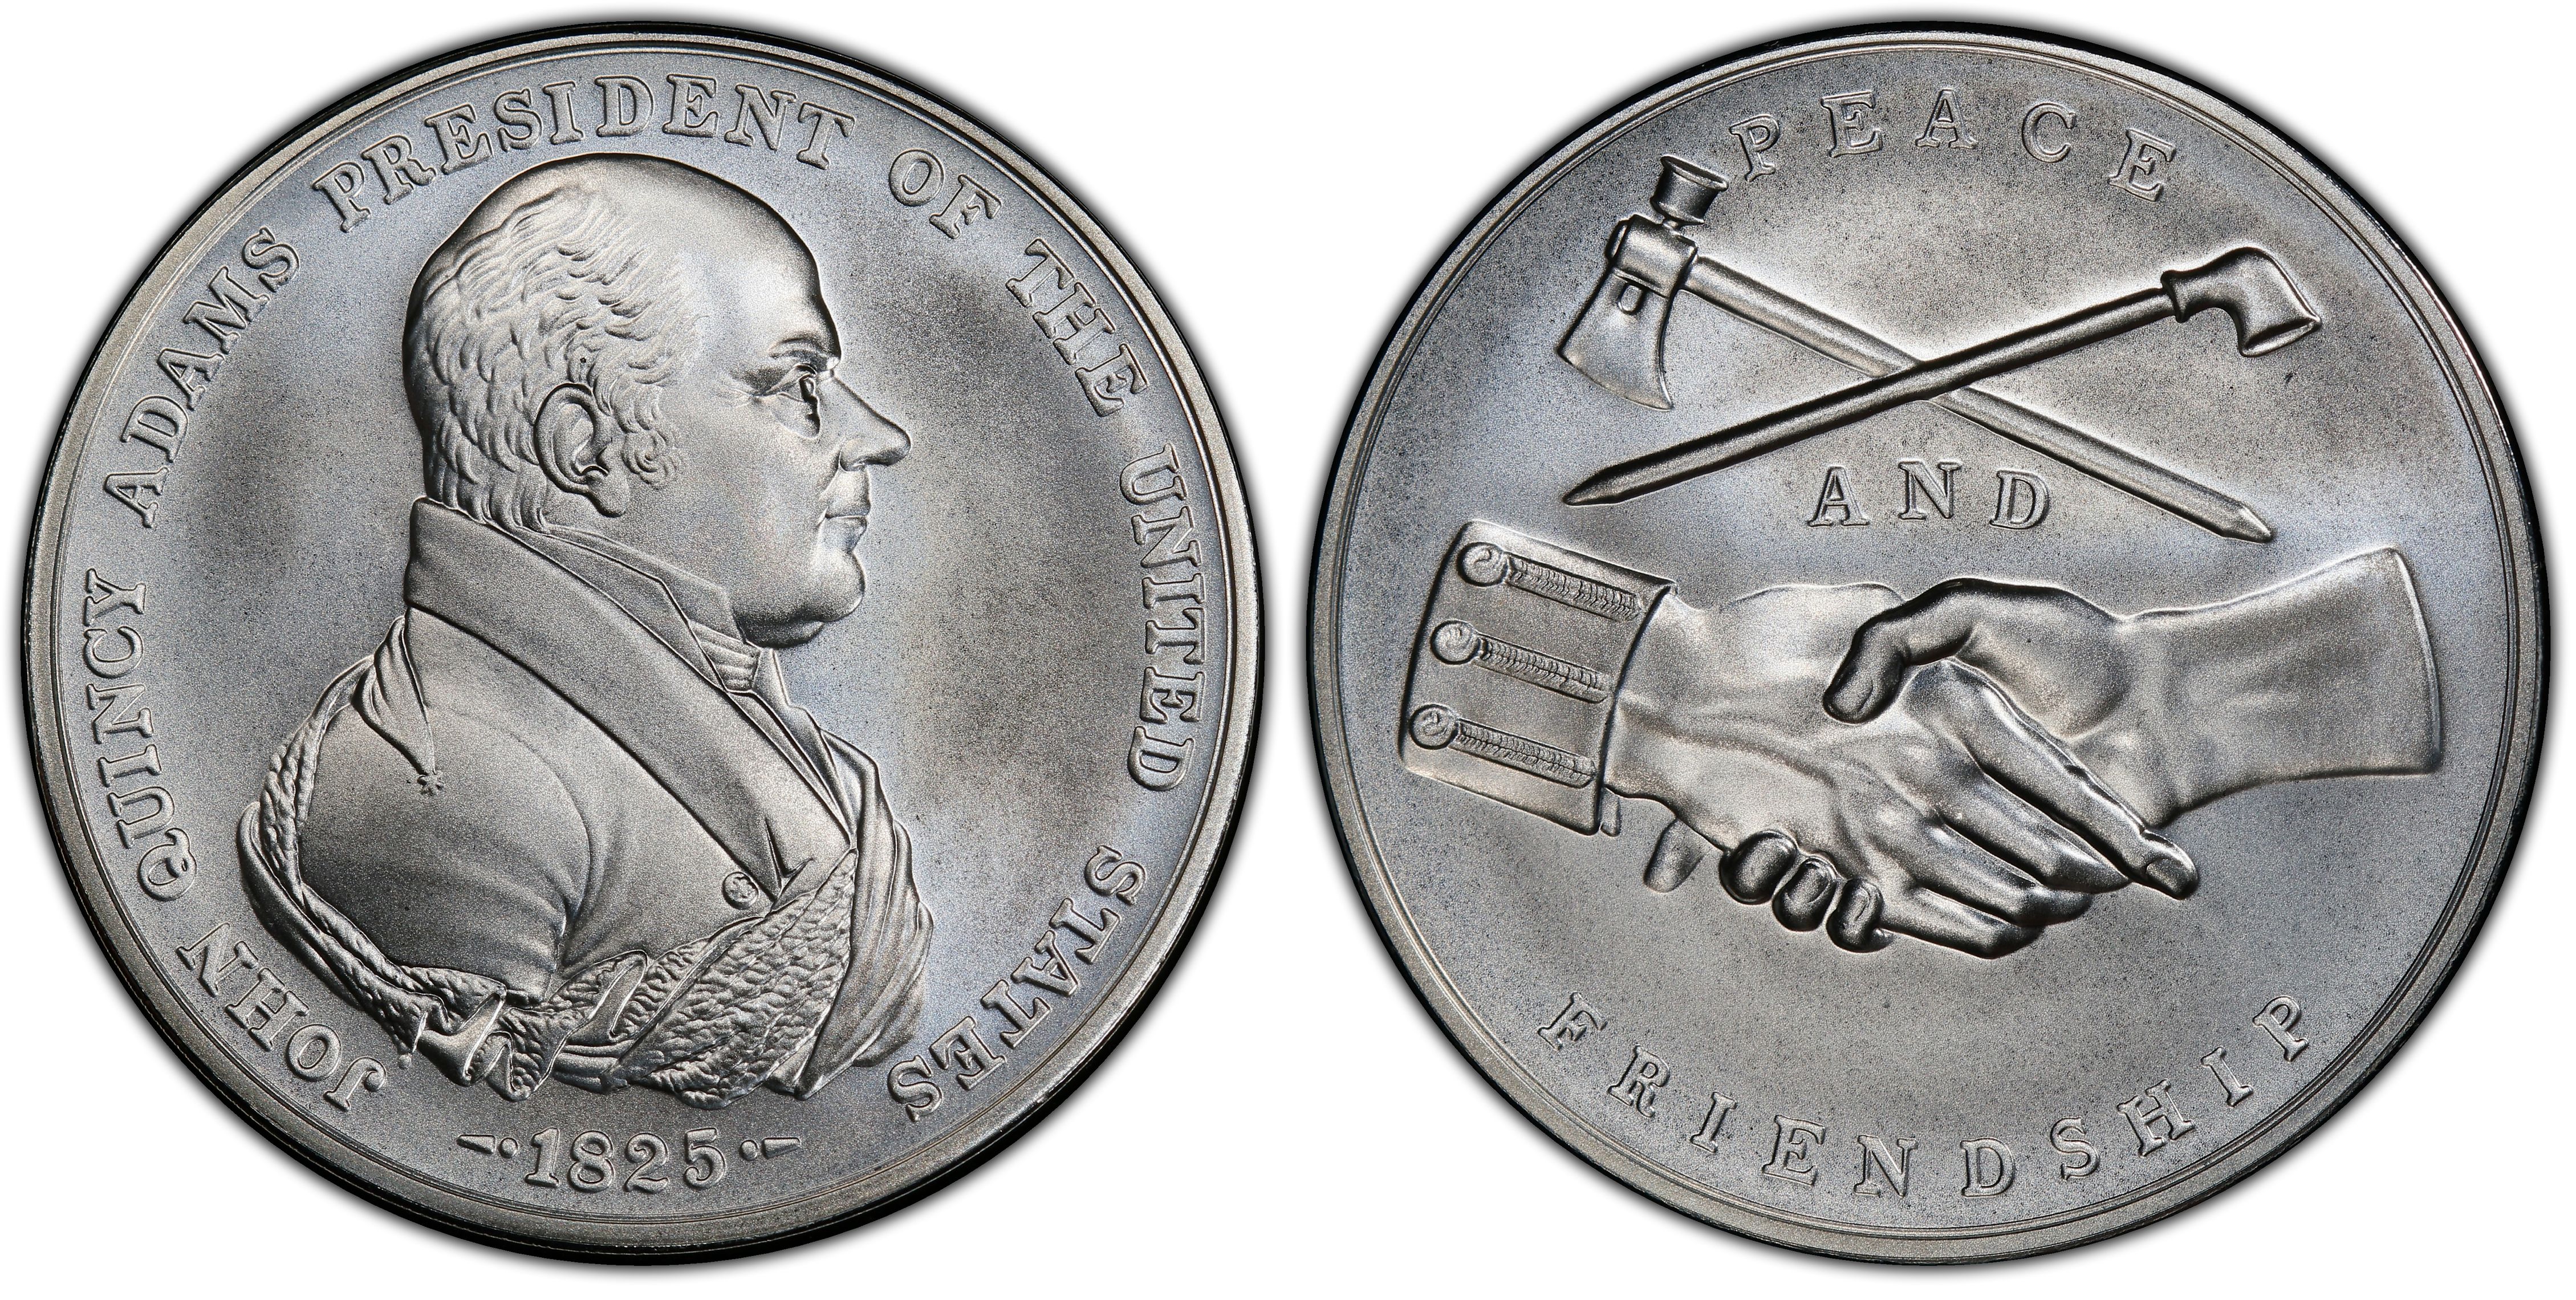 alba quincy silver coin